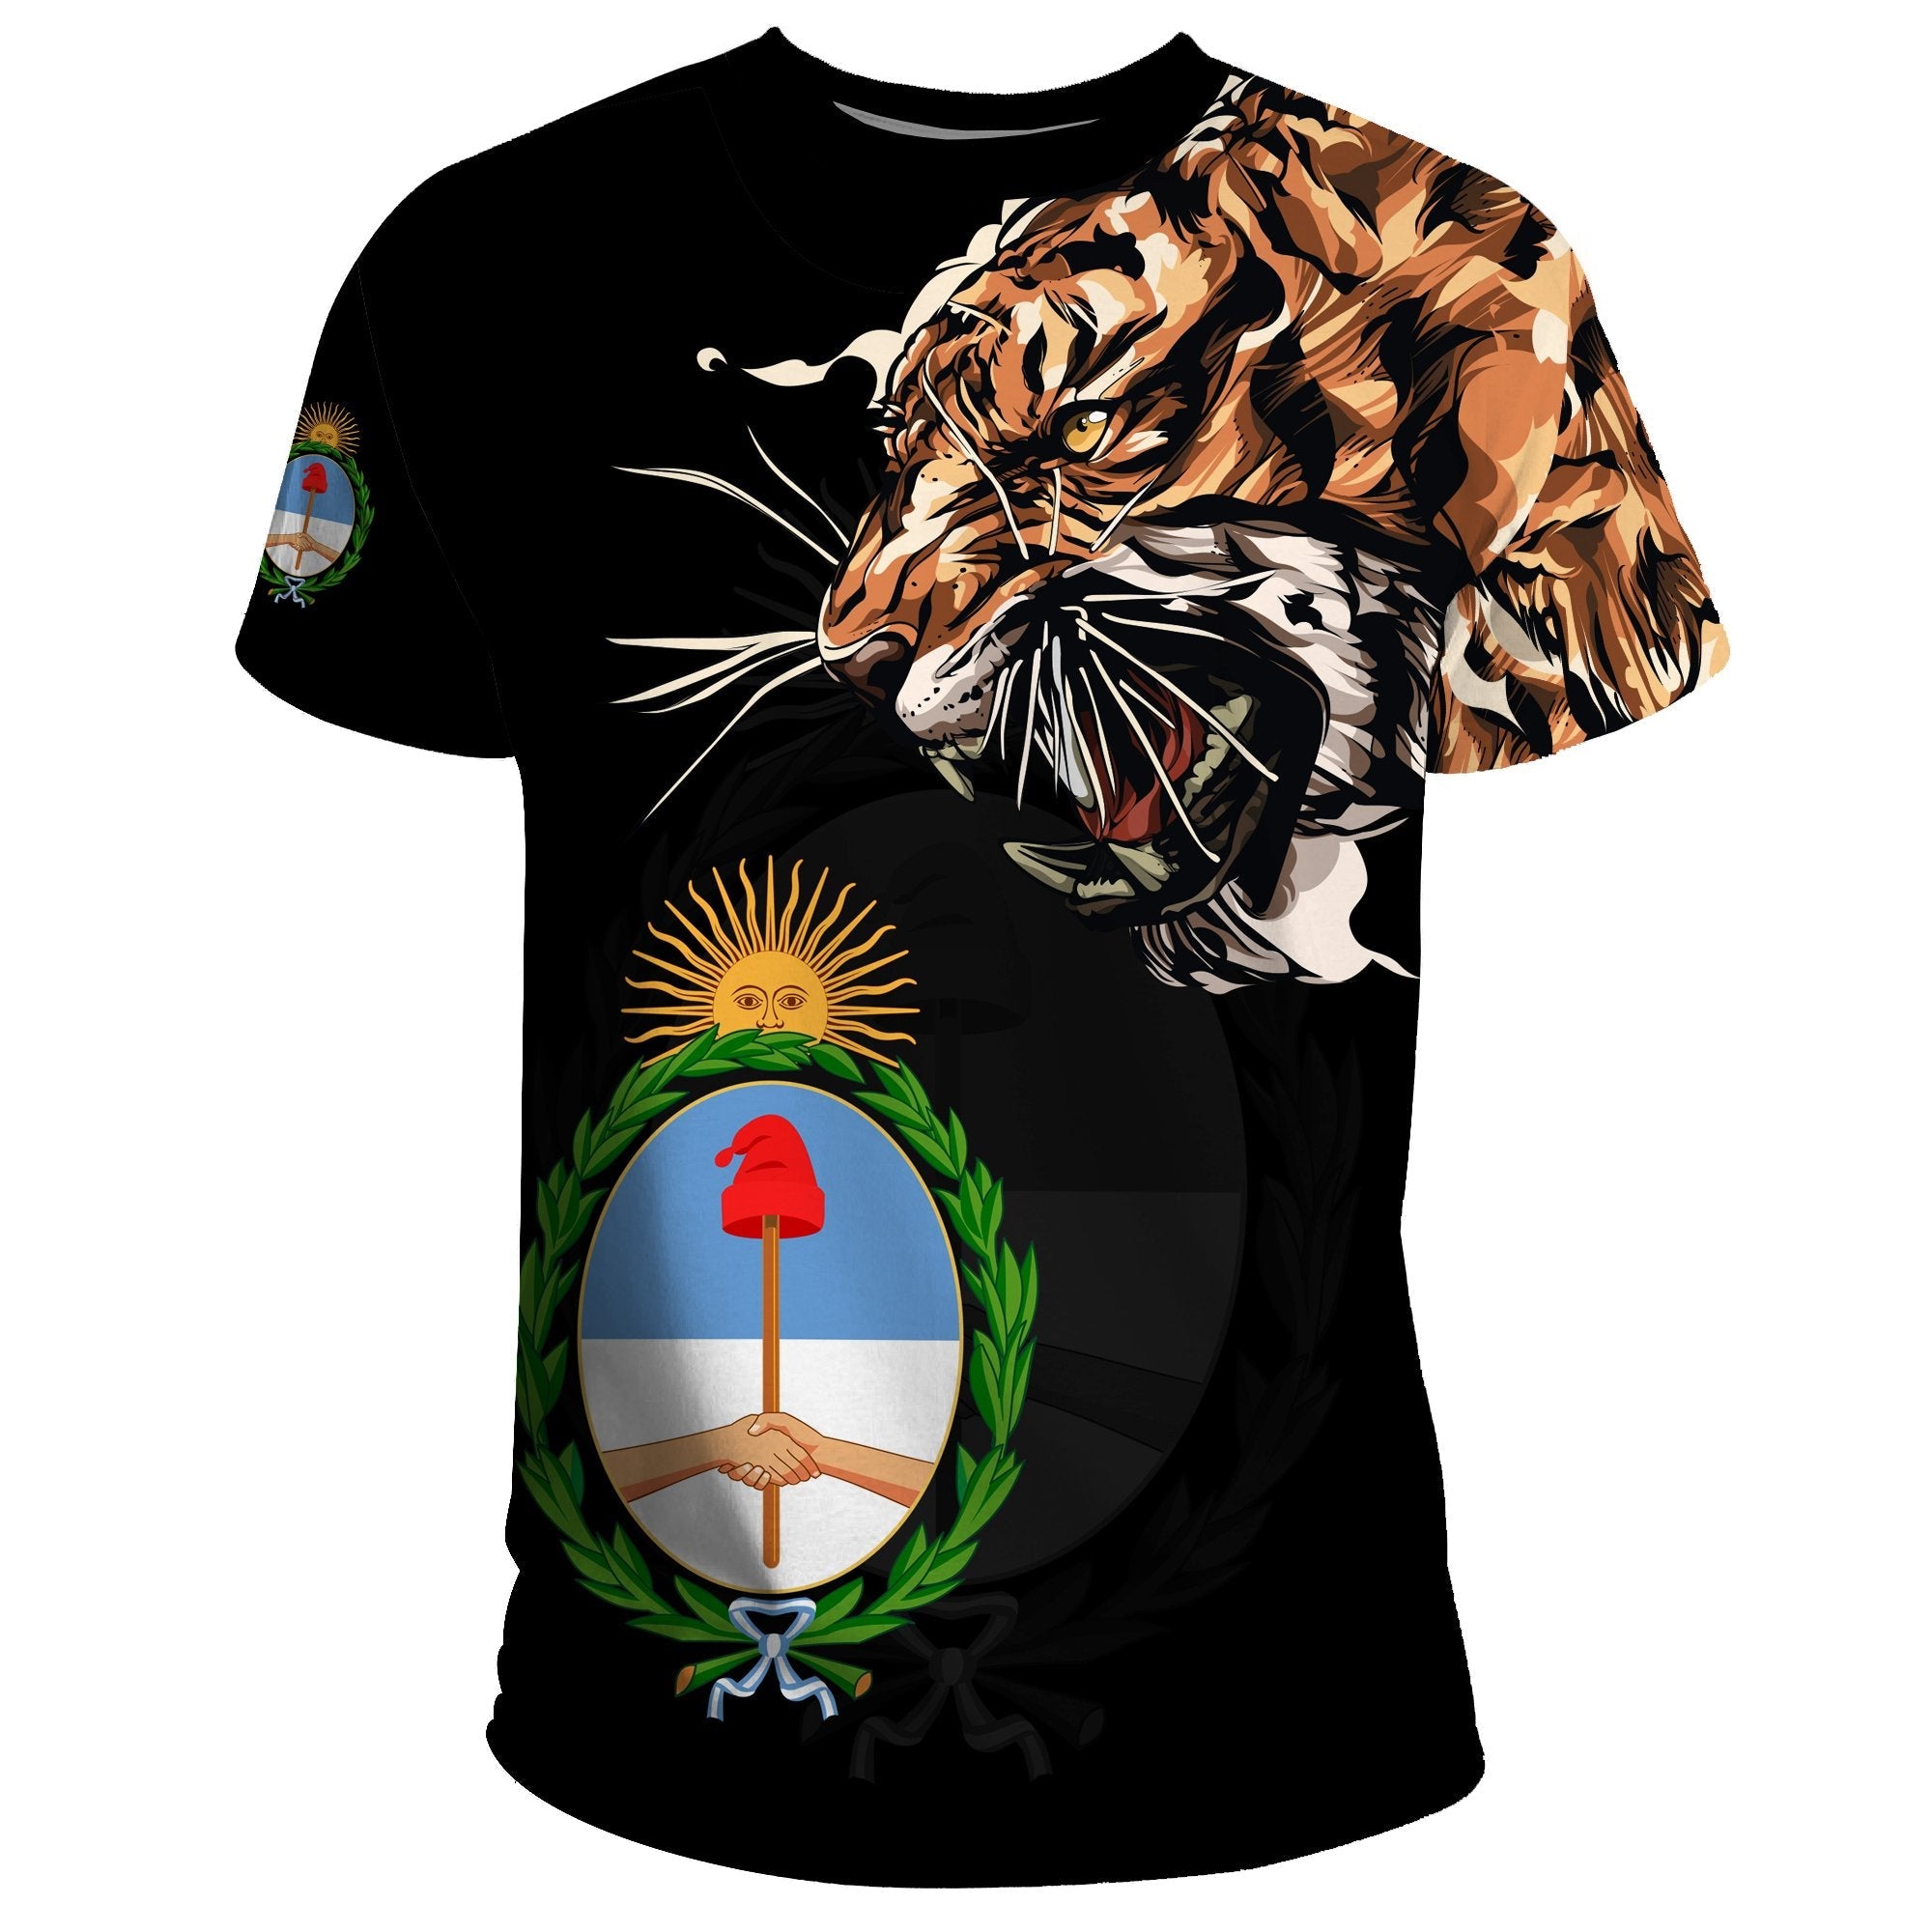 argentina-t-shirt-tiger-special-version